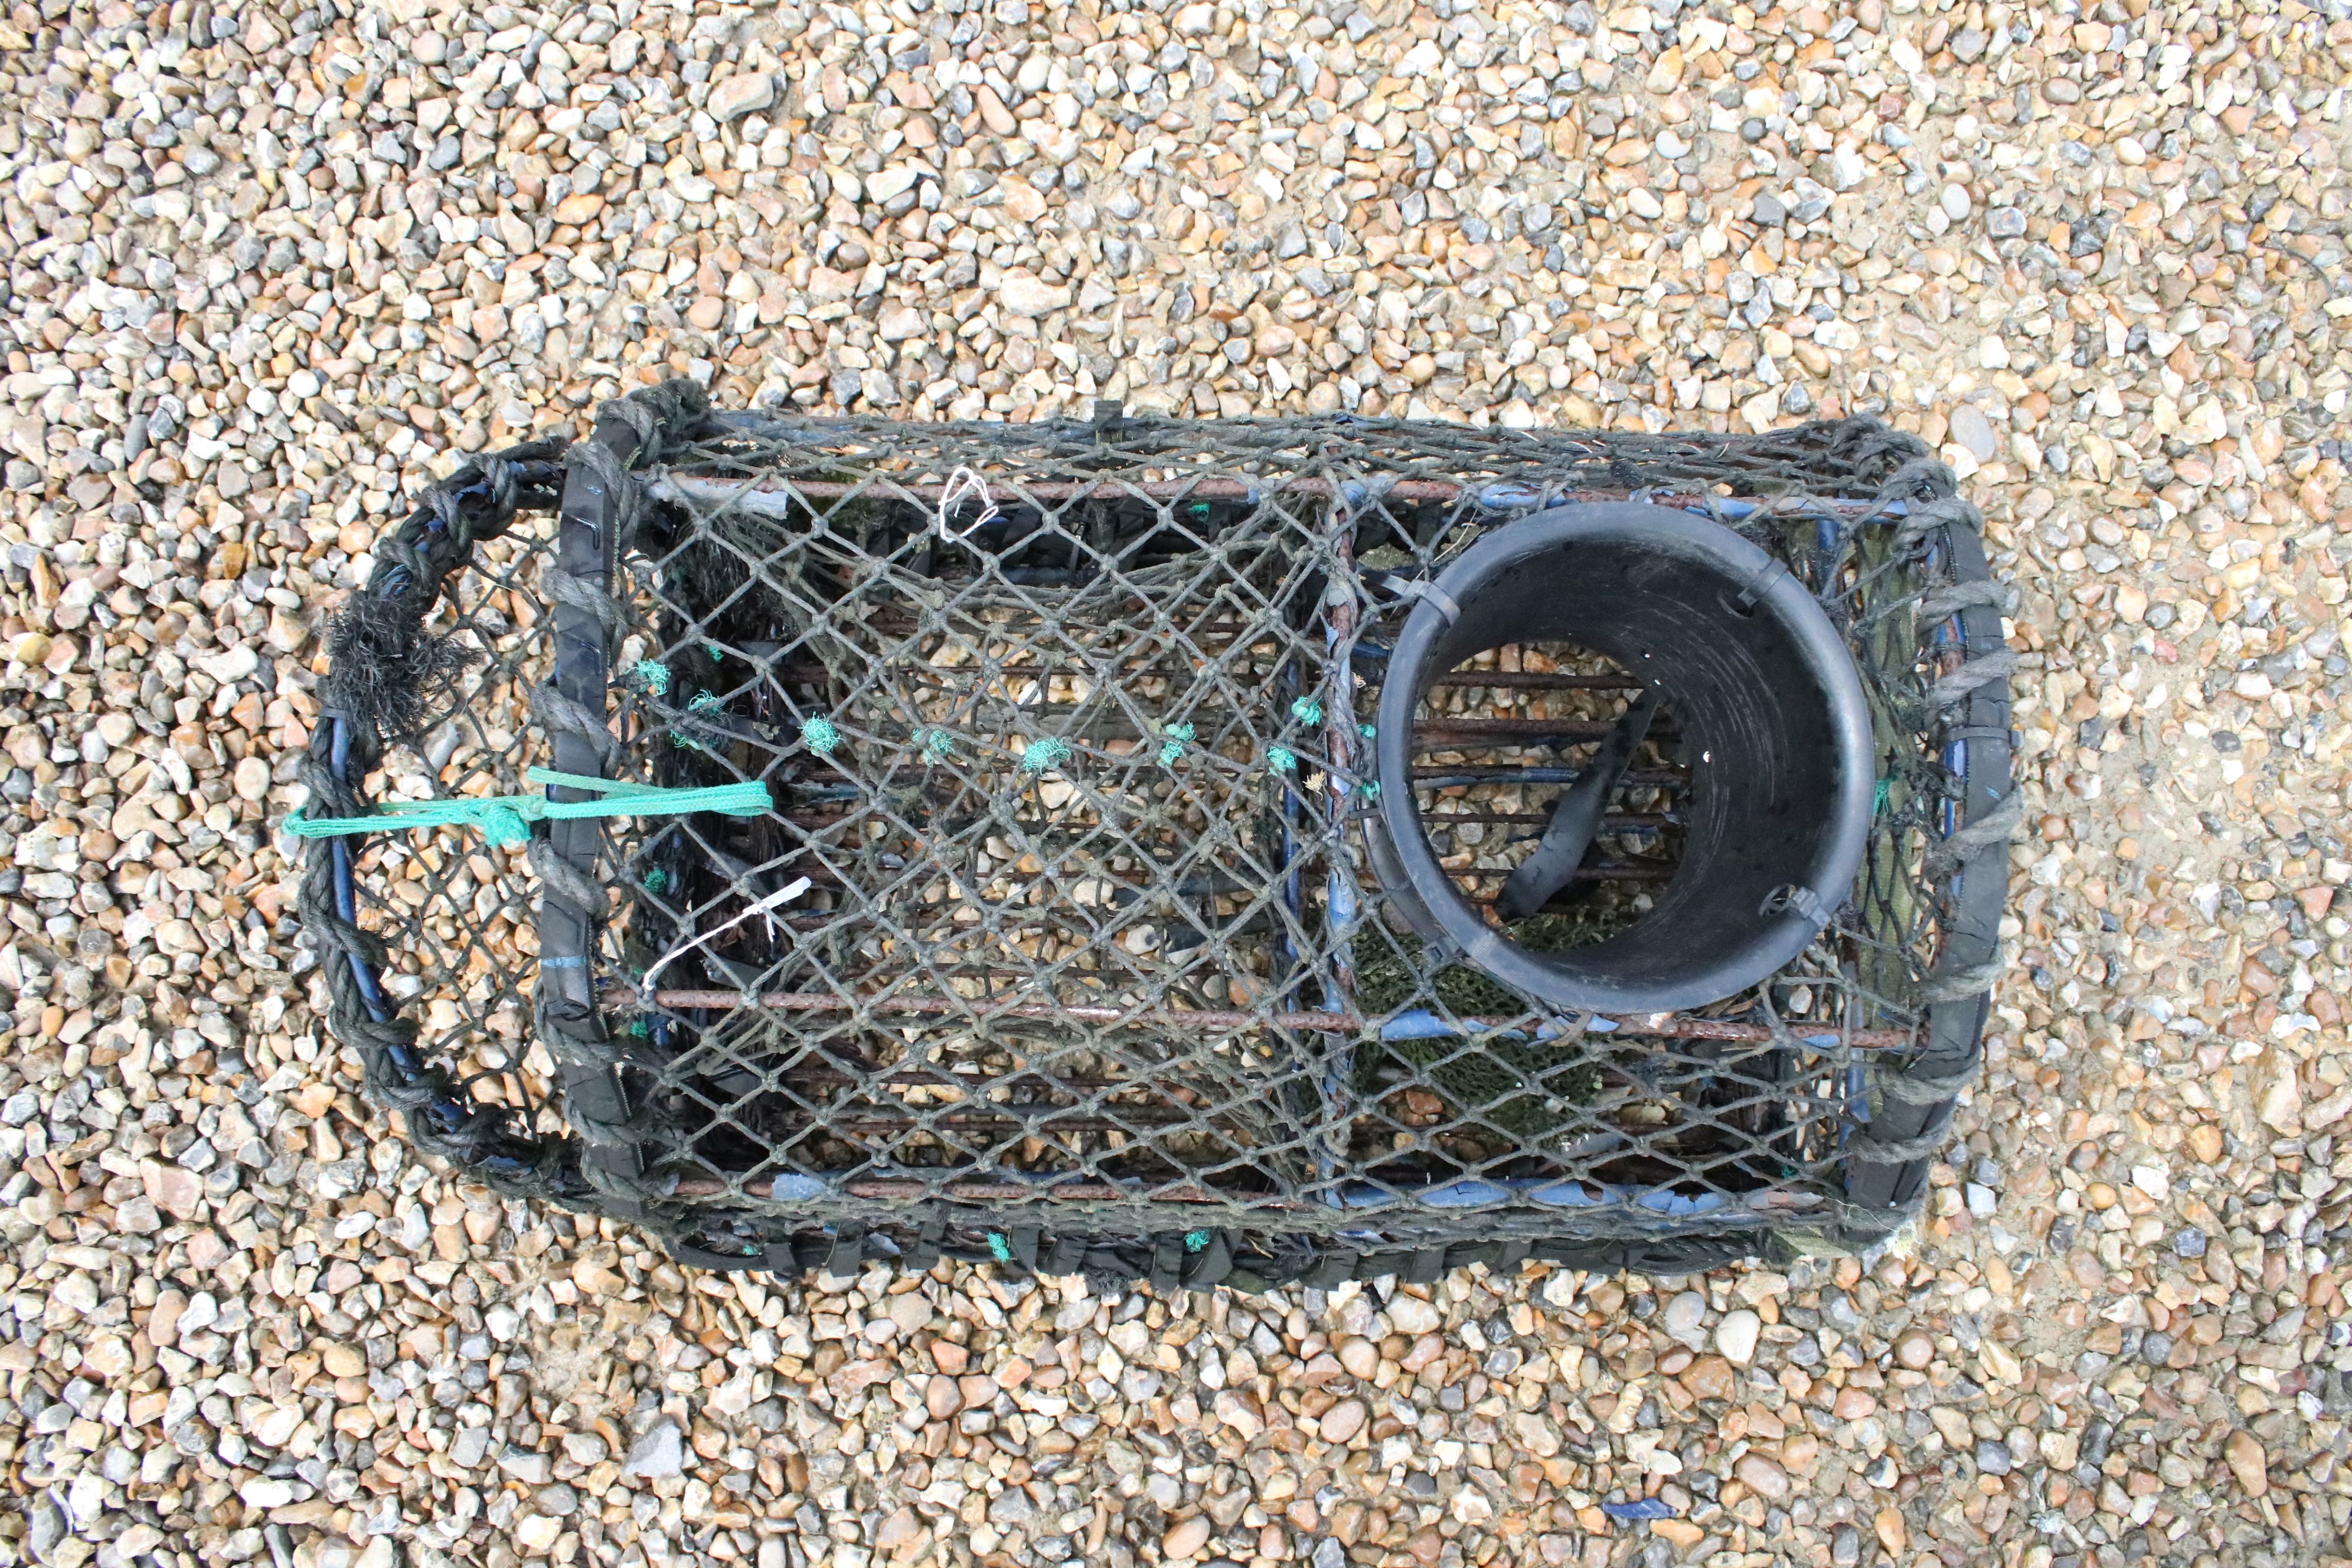 Lyme Regis Lobster Pot, 66cm long x 39cm high - Image 2 of 5